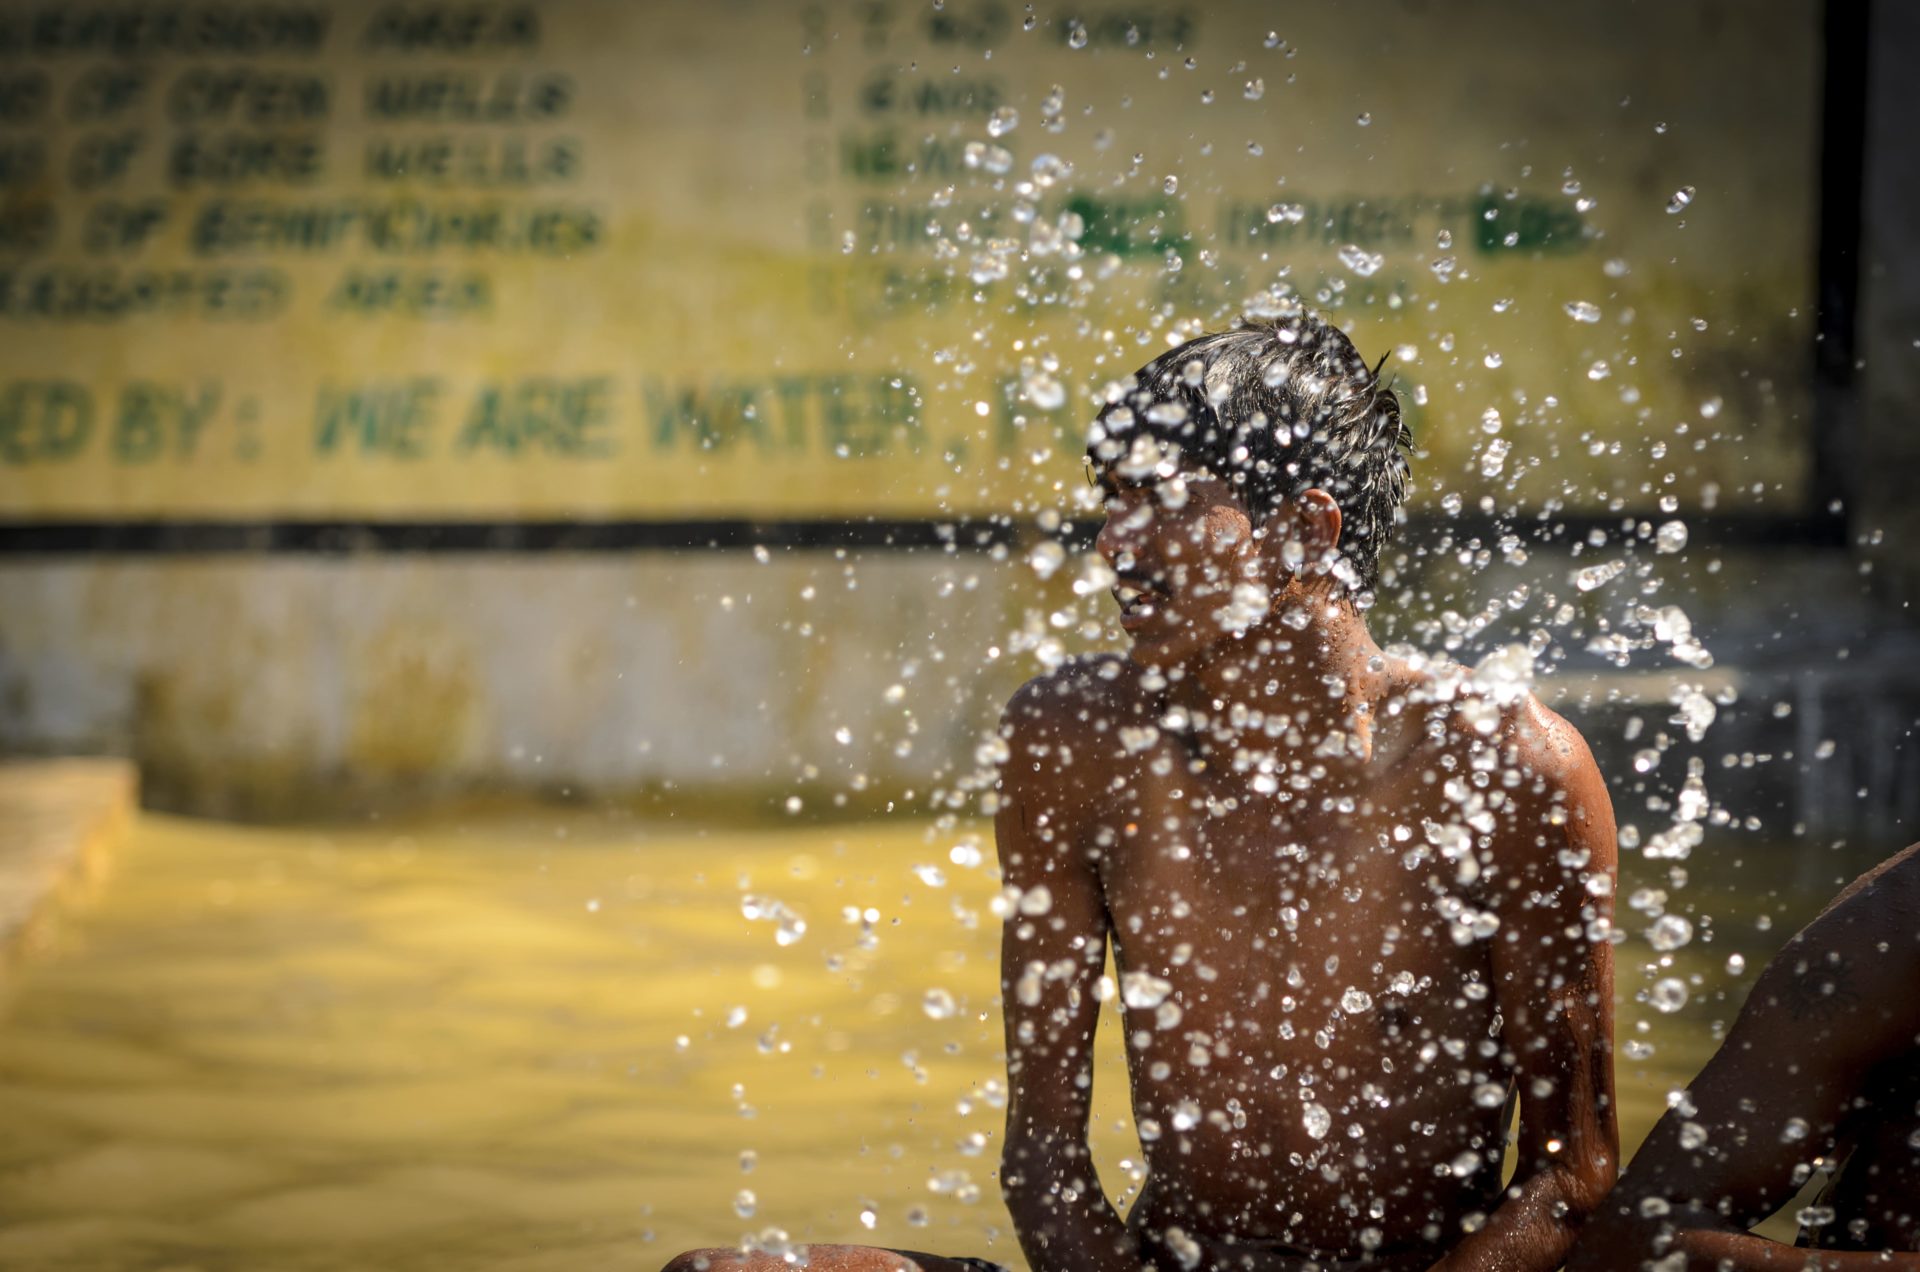 Roca assinala o Dia Mundial da Água, em parceria com a Fundação We Are Water